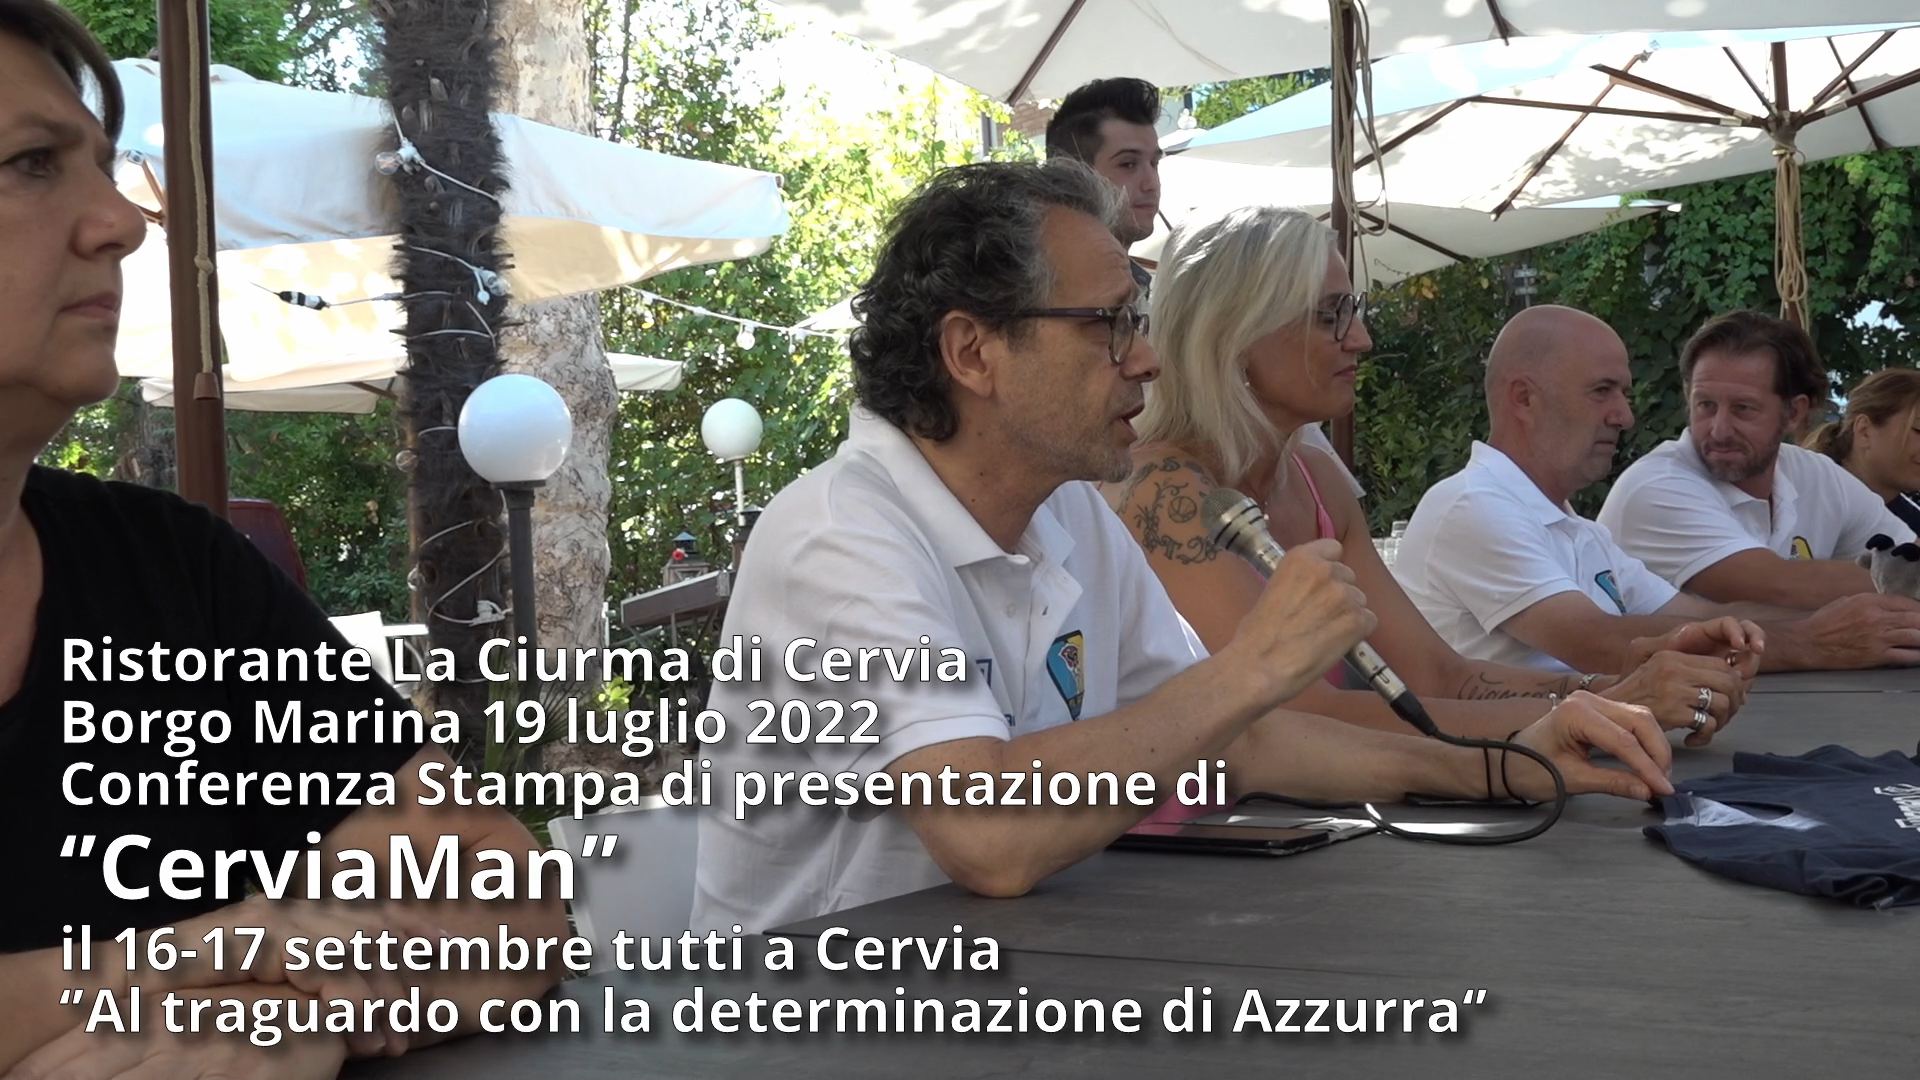 Conferenza Stampa di Presentazione di “CerviaMan”: Al traguardo con la determinazione di Azzurra